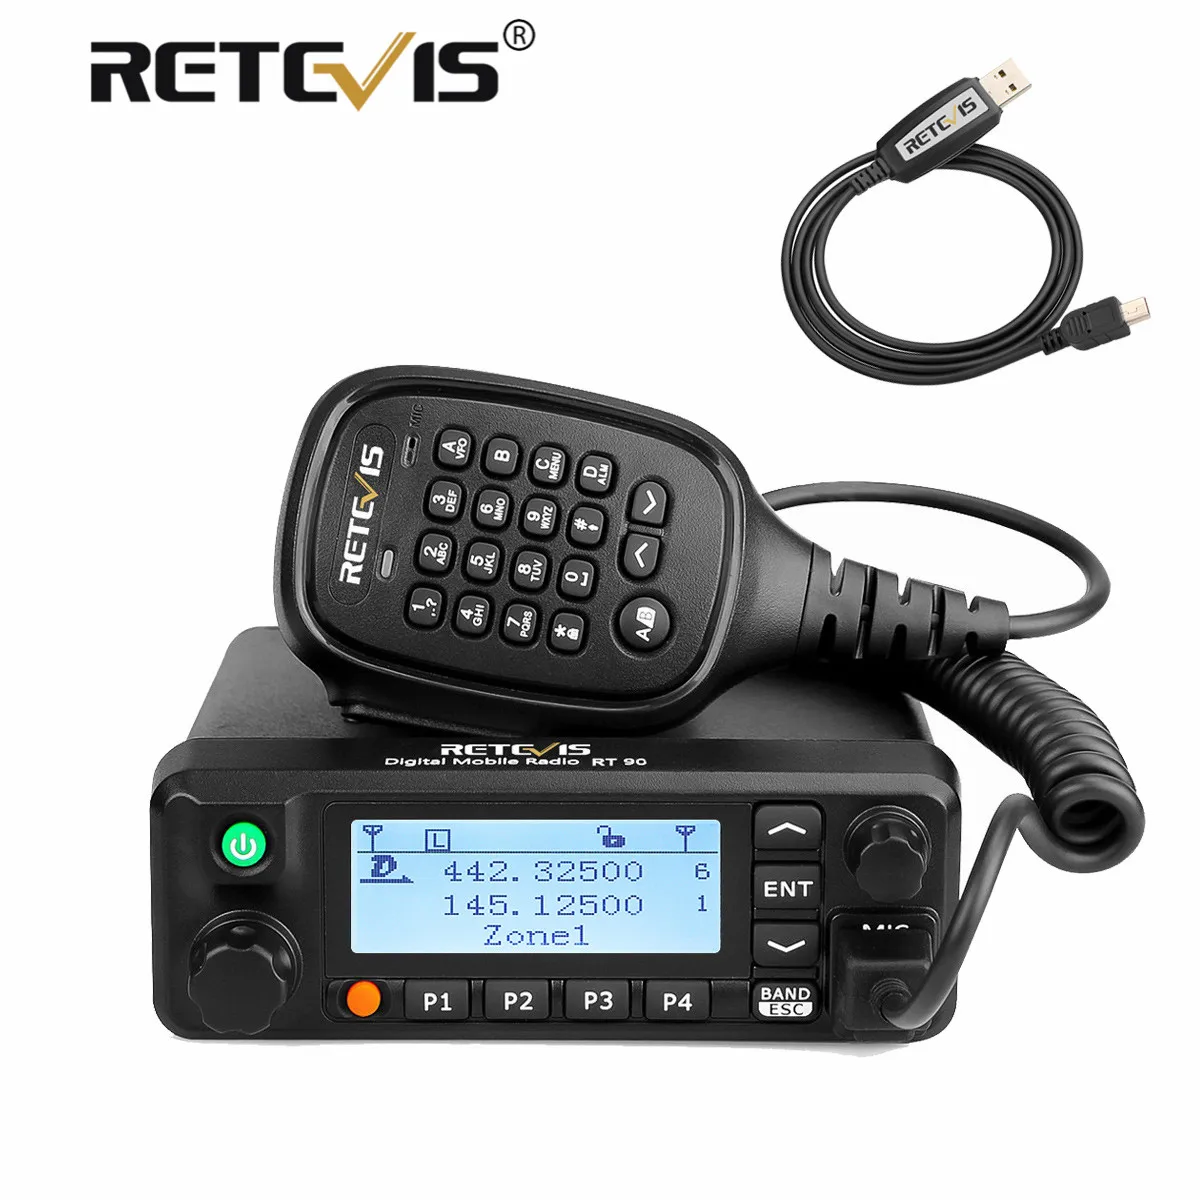 Цифровой мобильный радиоприемник Retevis RT90 DMR макс. диапазон 10 км | Мобильные